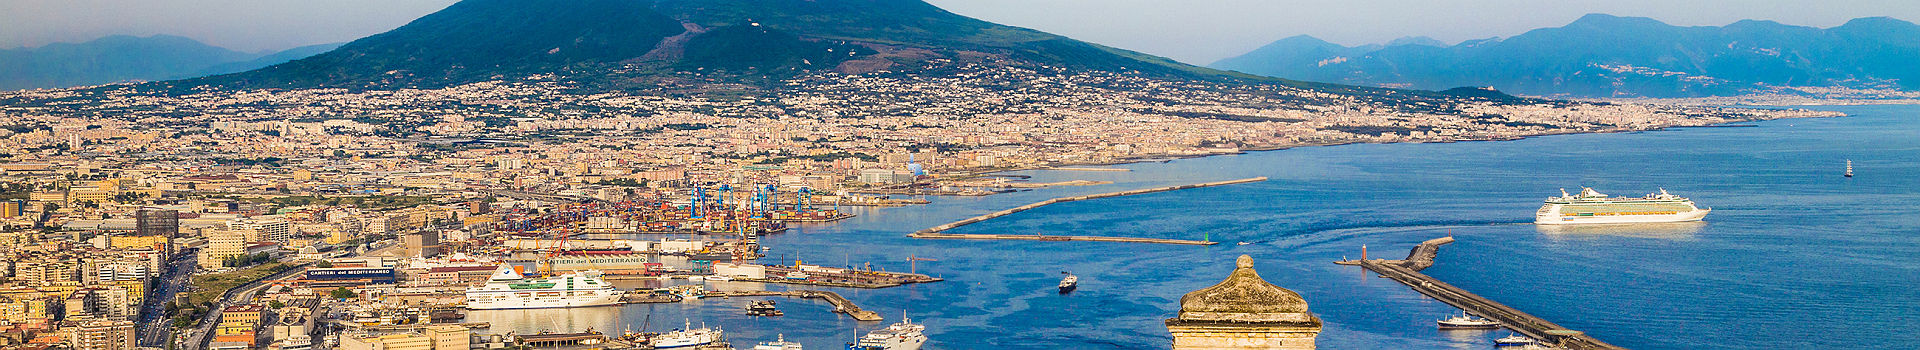 Italie - Vue sur la ville et le port de Naples